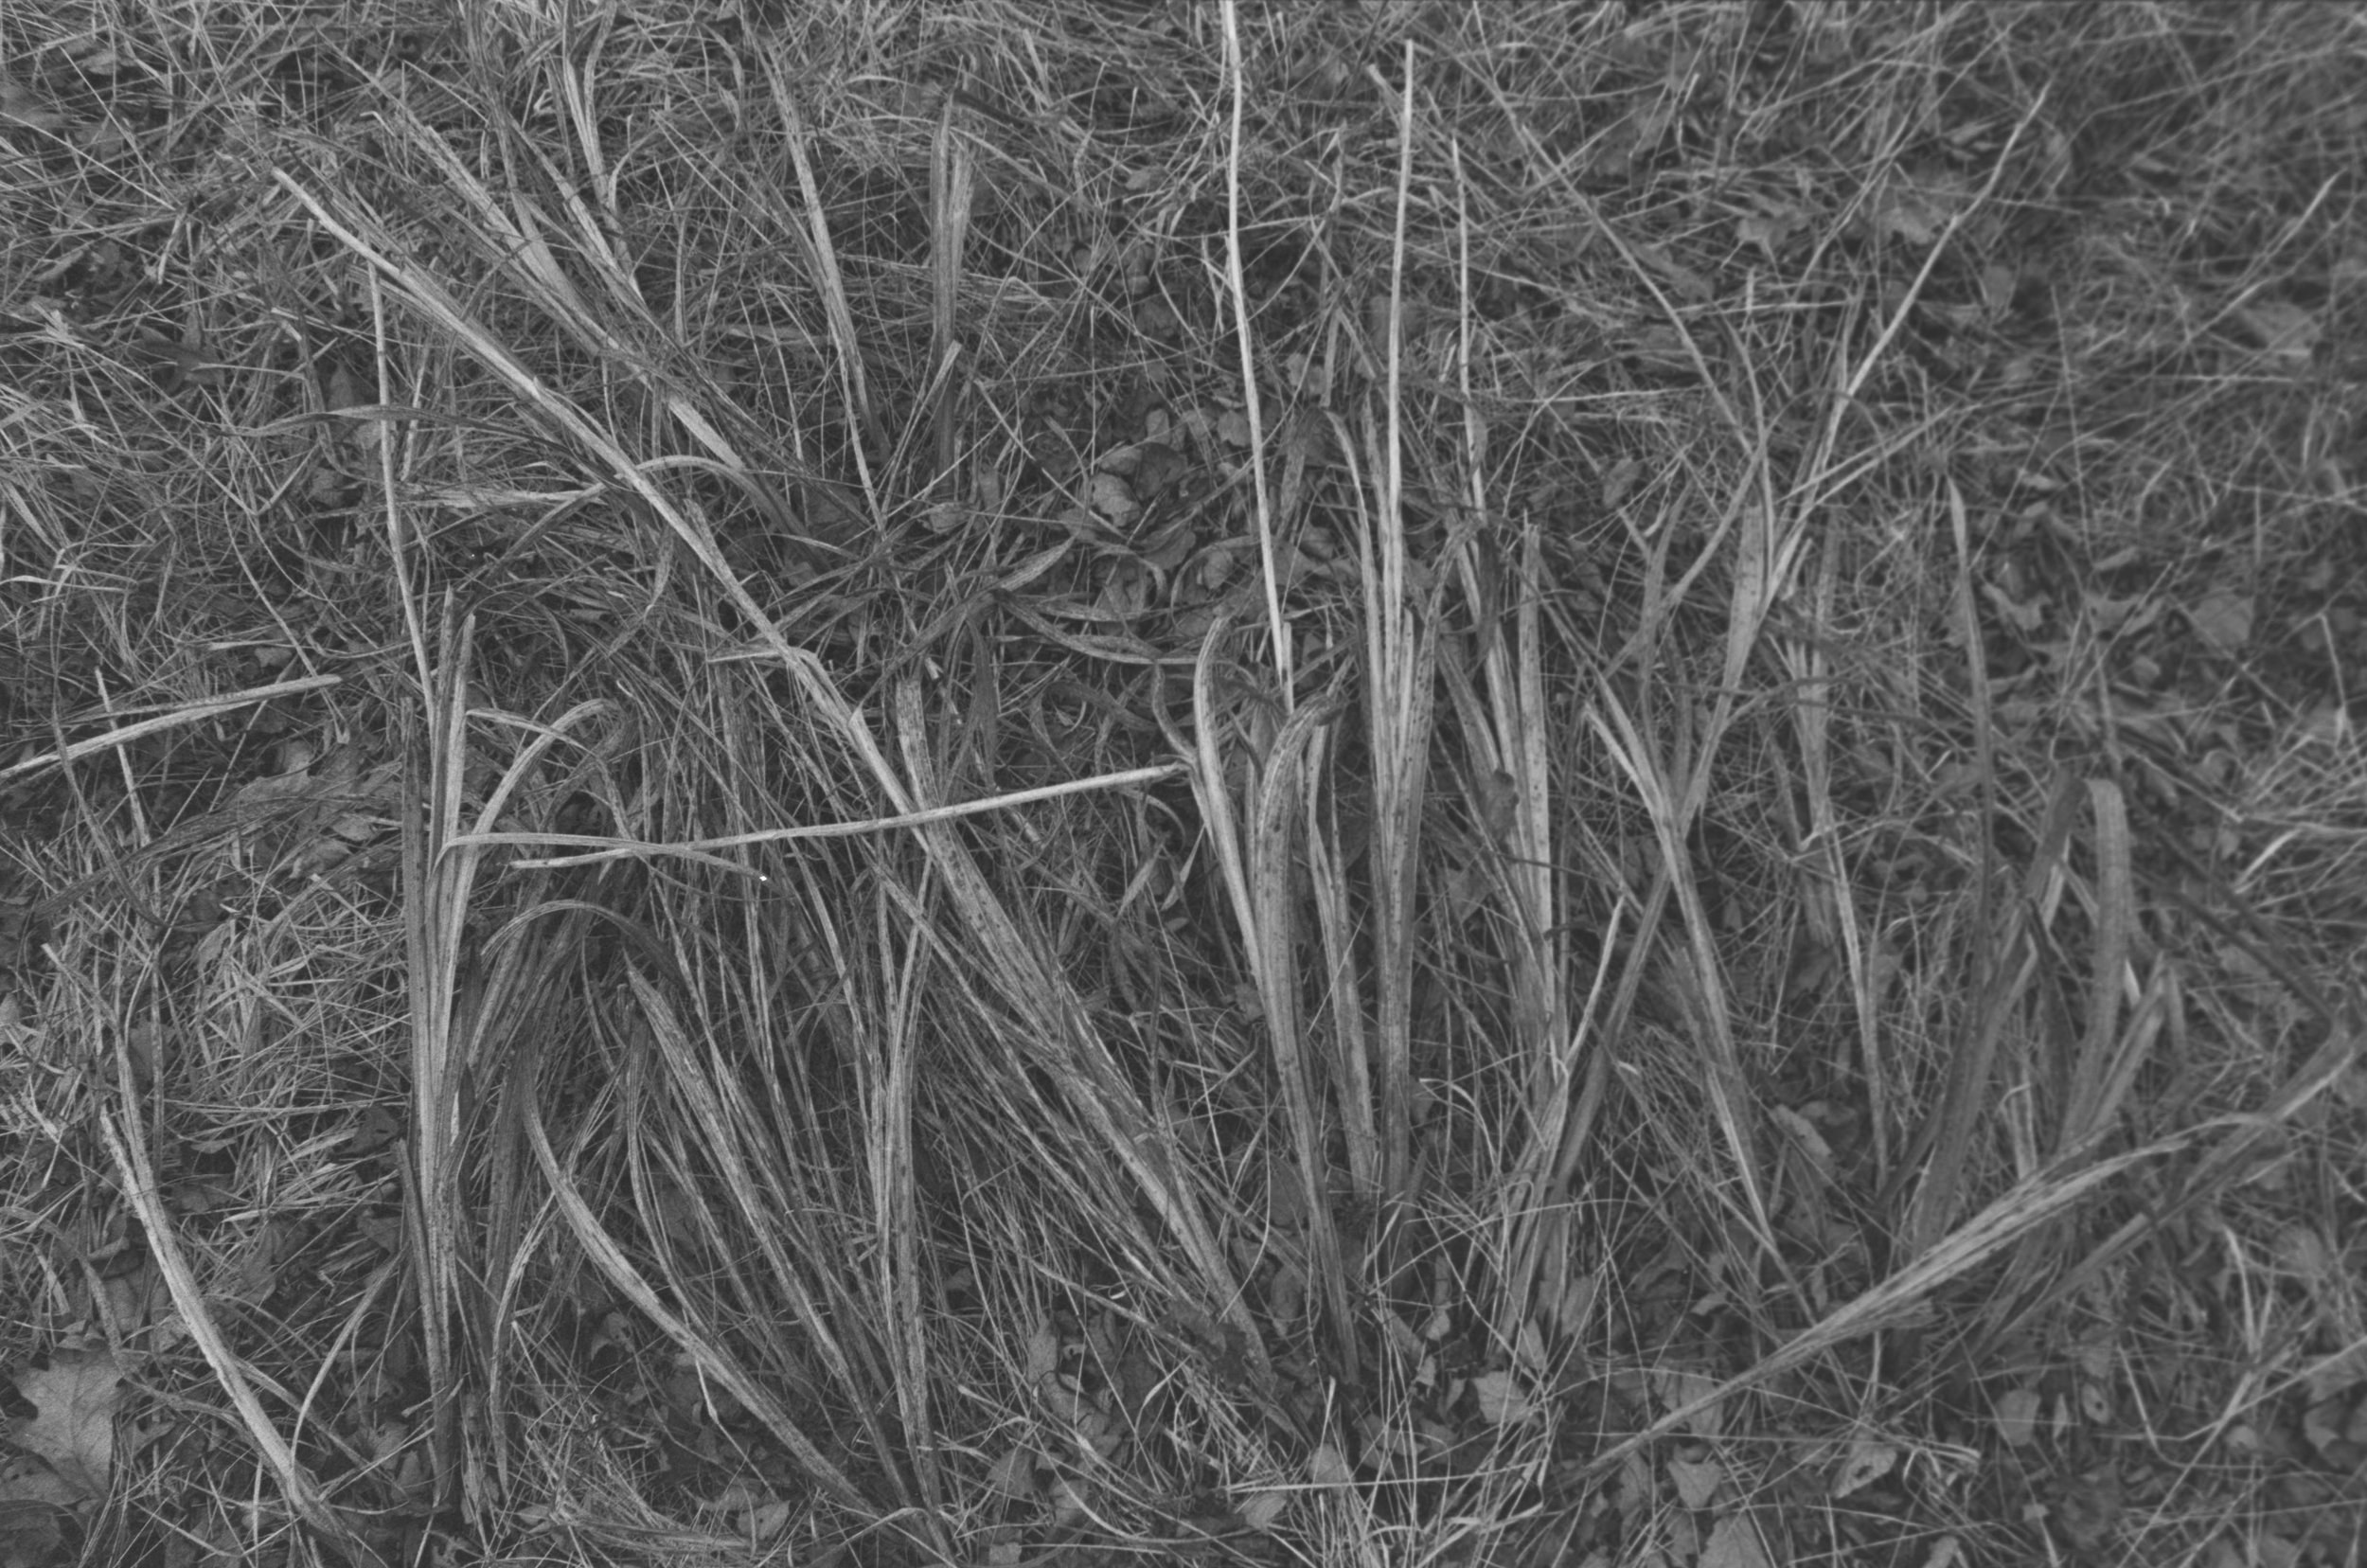 flattened grasses.jpg